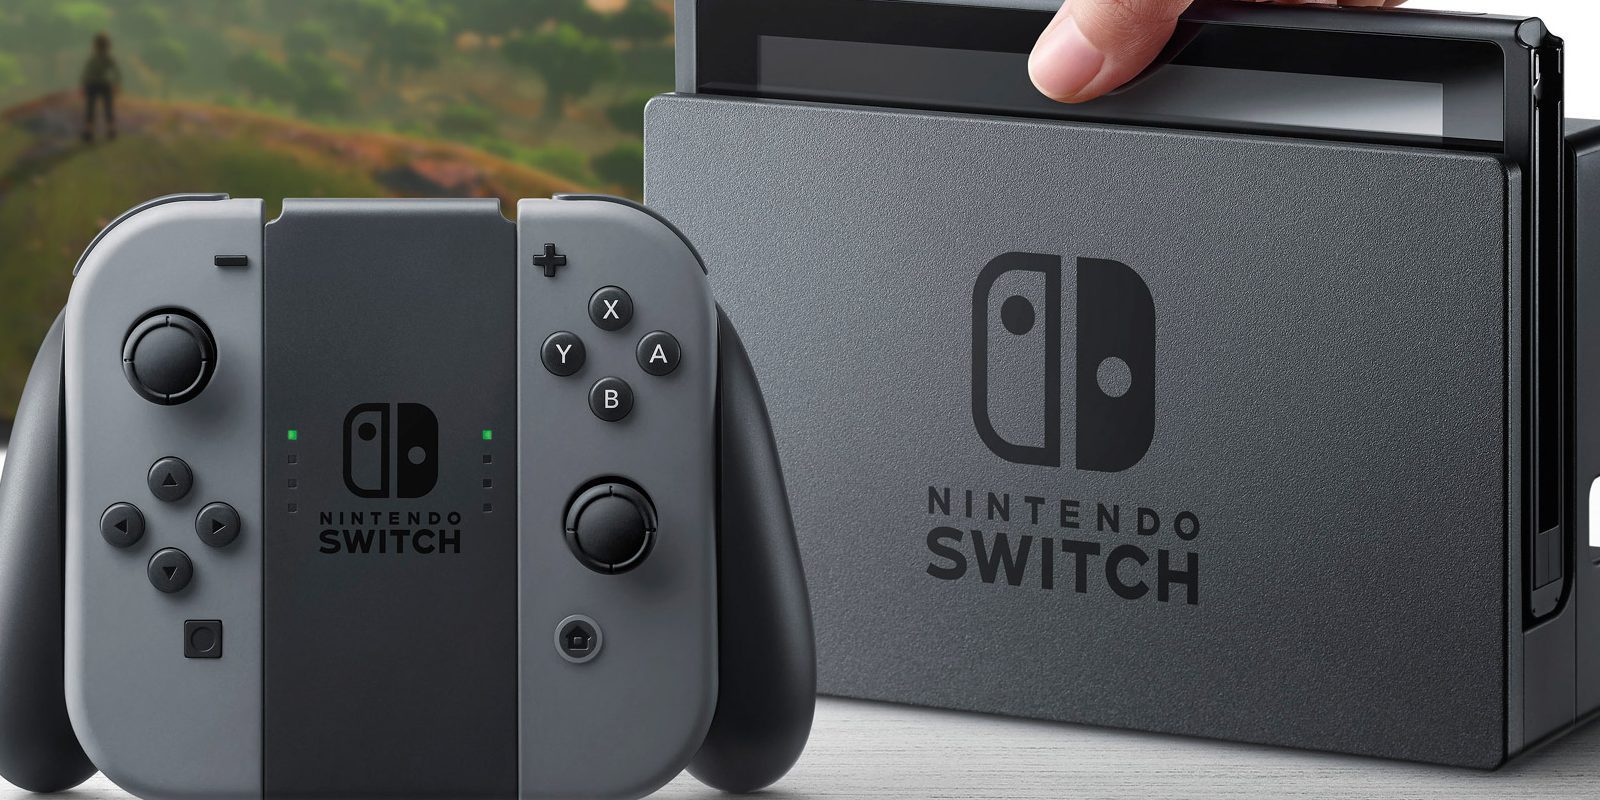 Nintendo Switch sería region-free según unos logos